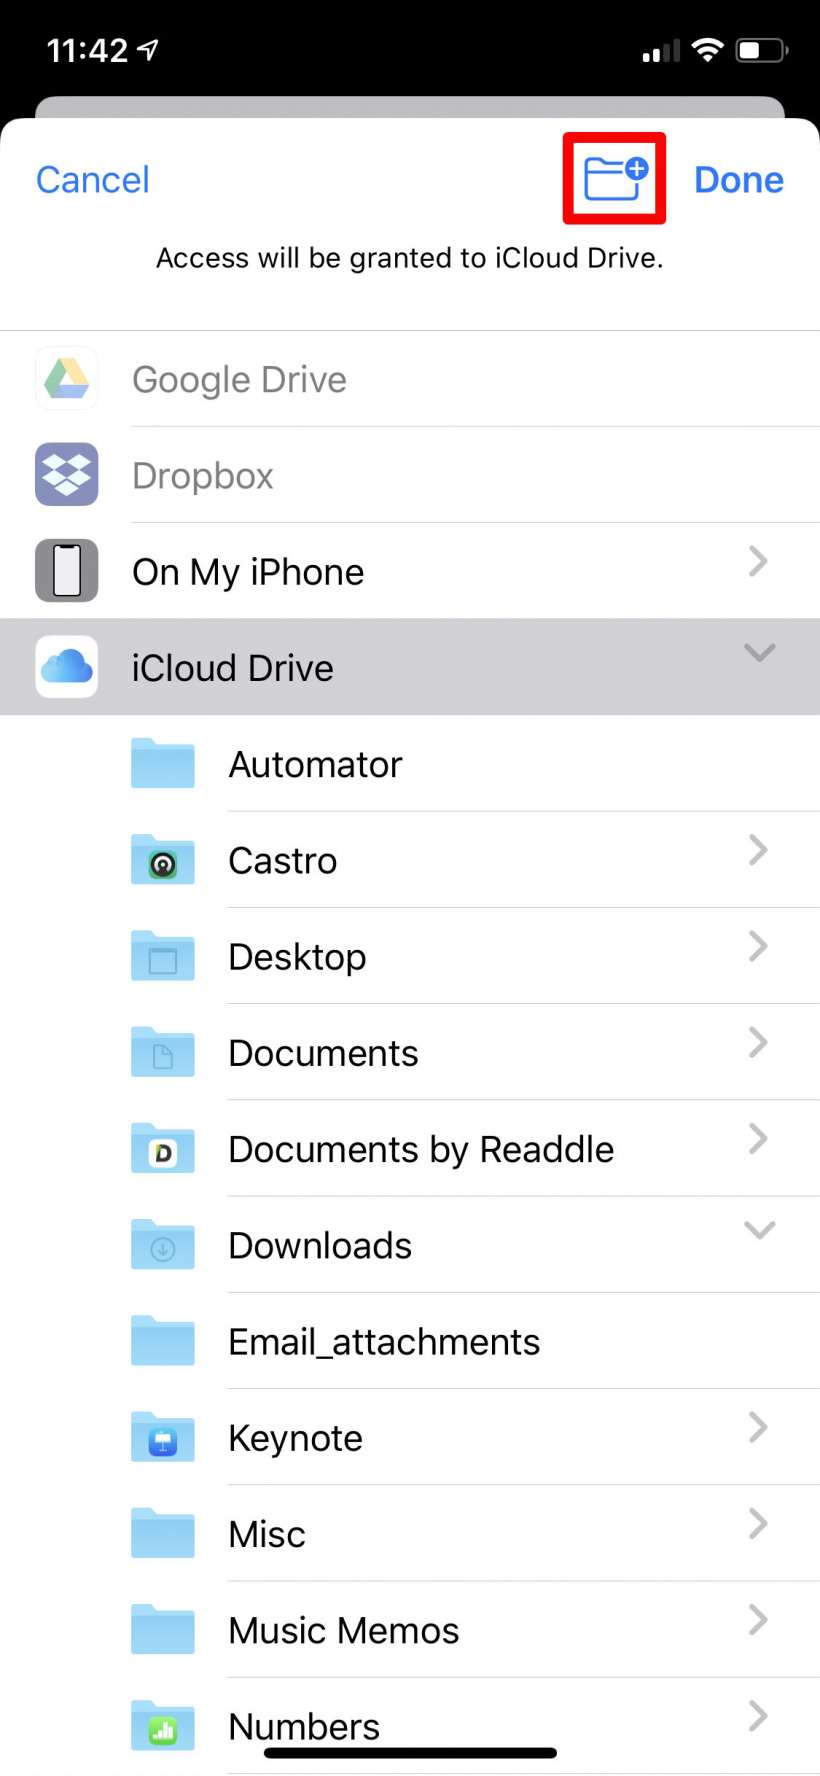 كيفية استخدام Safari download manager على iPhone و iPad.